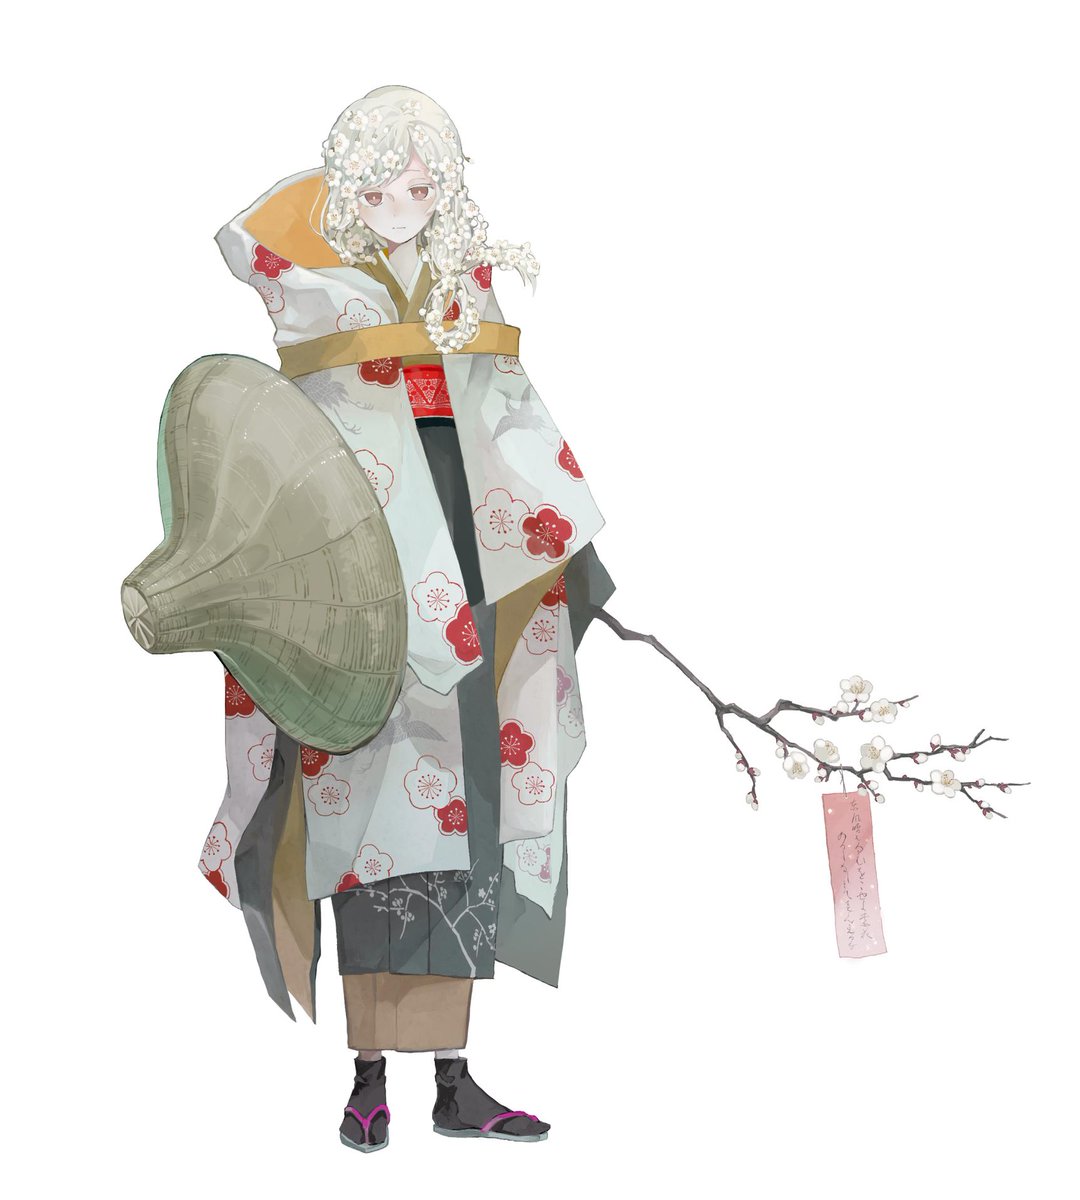 「にほひおこせよ 梅の花 」|嘉村ギミのイラスト